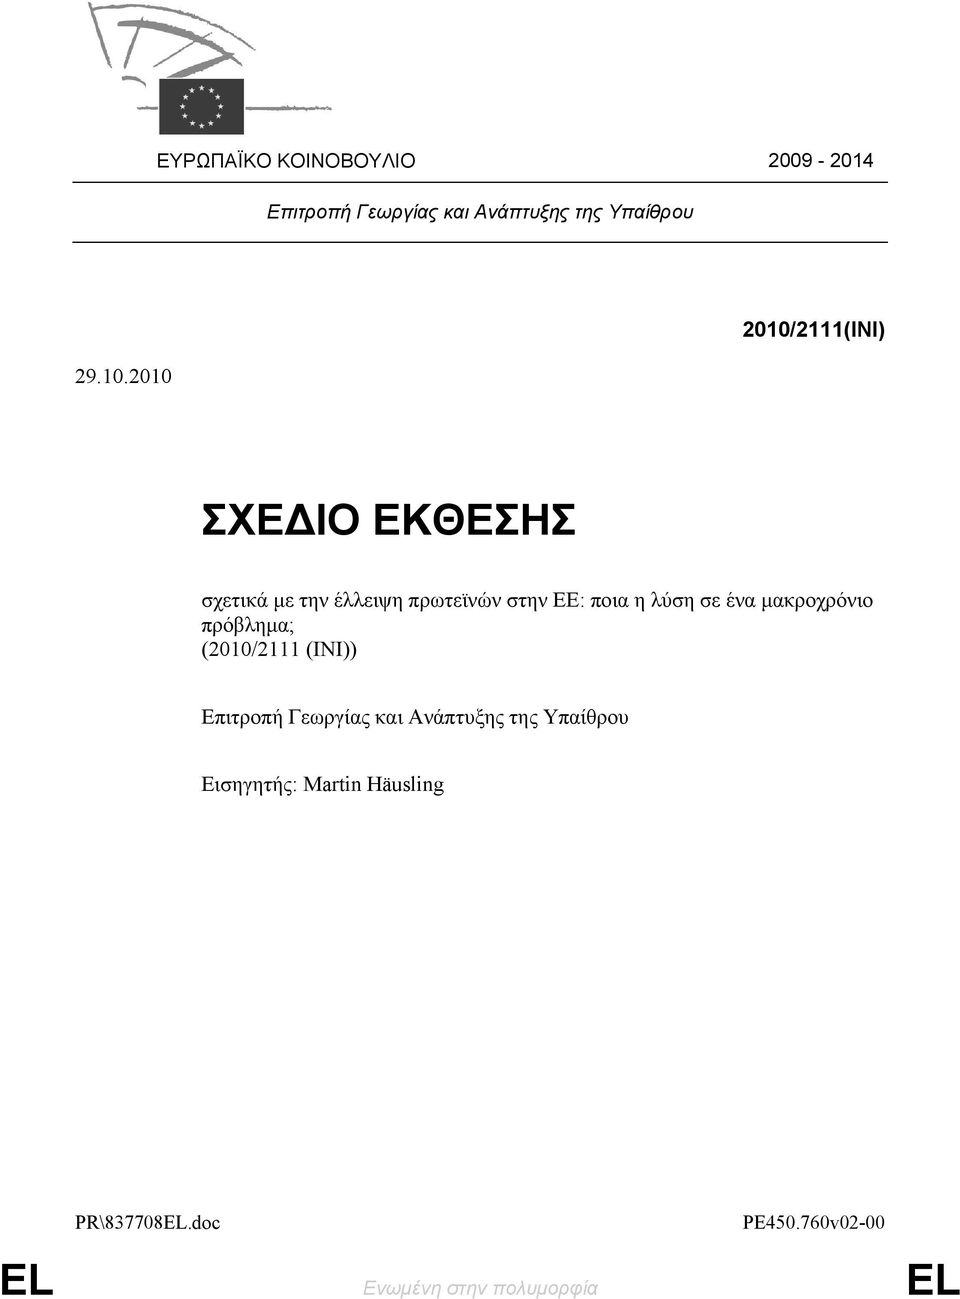 λύση σε ένα μακροχρόνιο πρόβλημα; (2010/2111 (INI)) Επιτροπή Γεωργίας και Ανάπτυξης